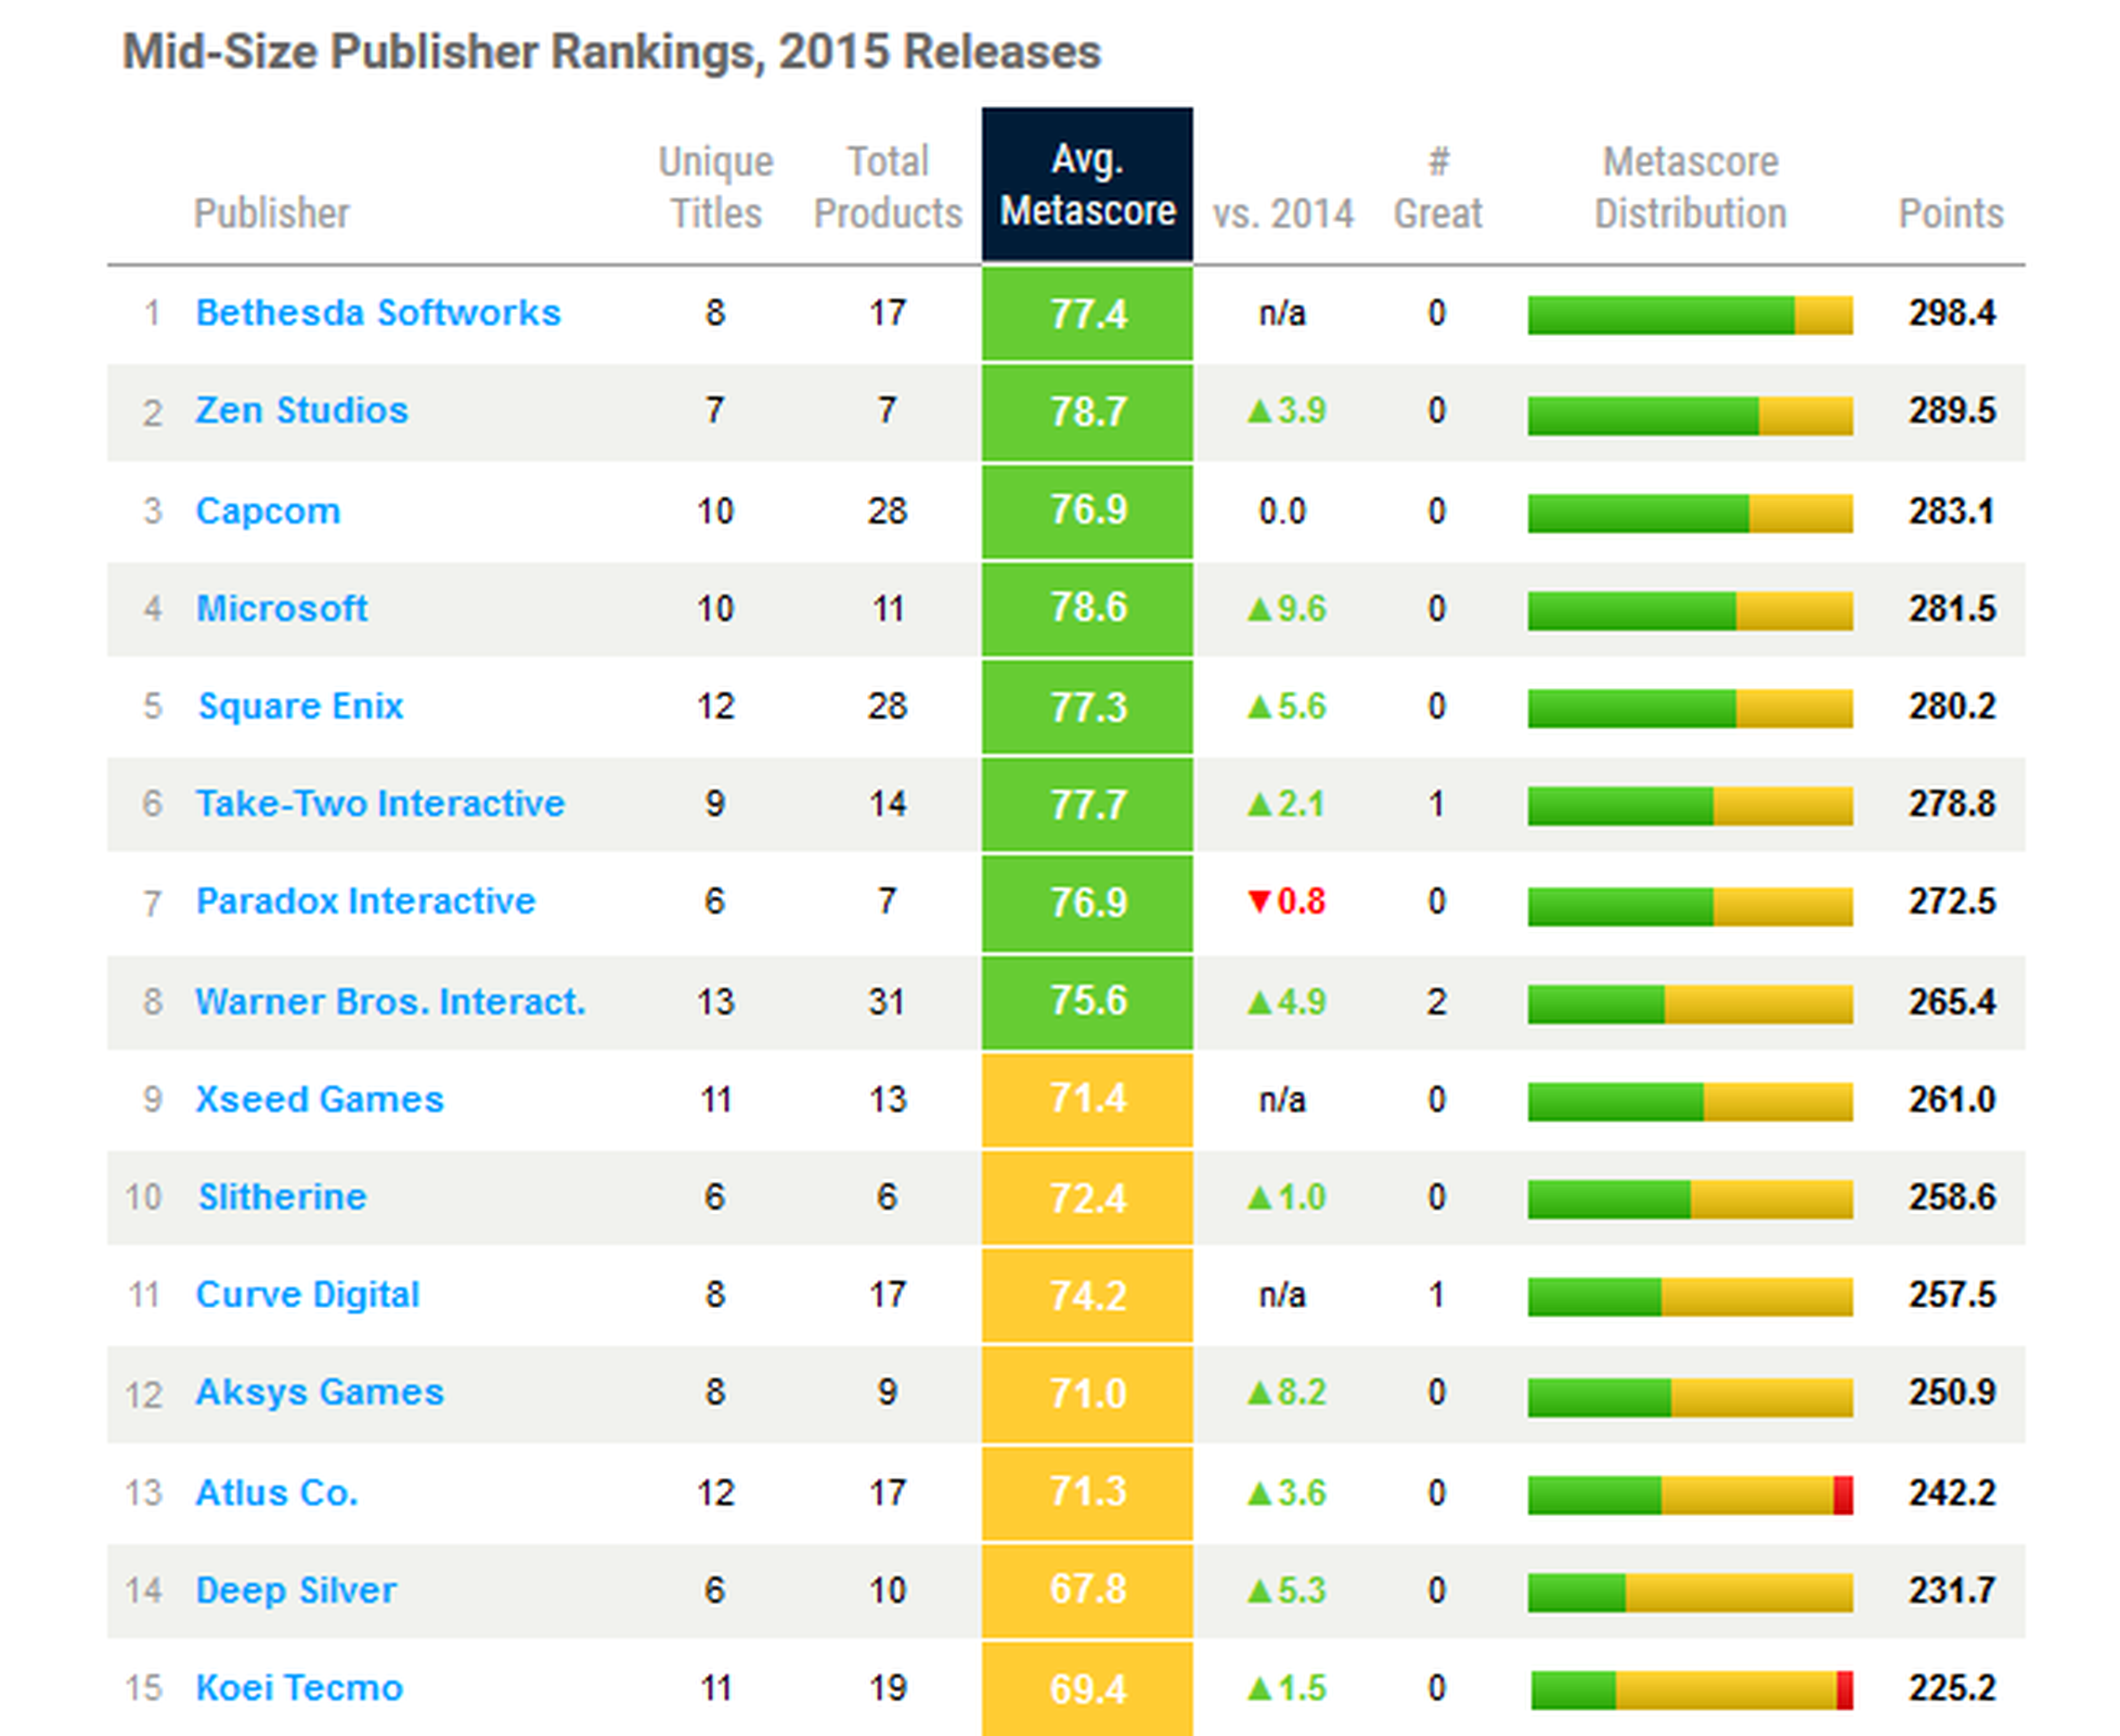 Las mejores compañías según Metacritic